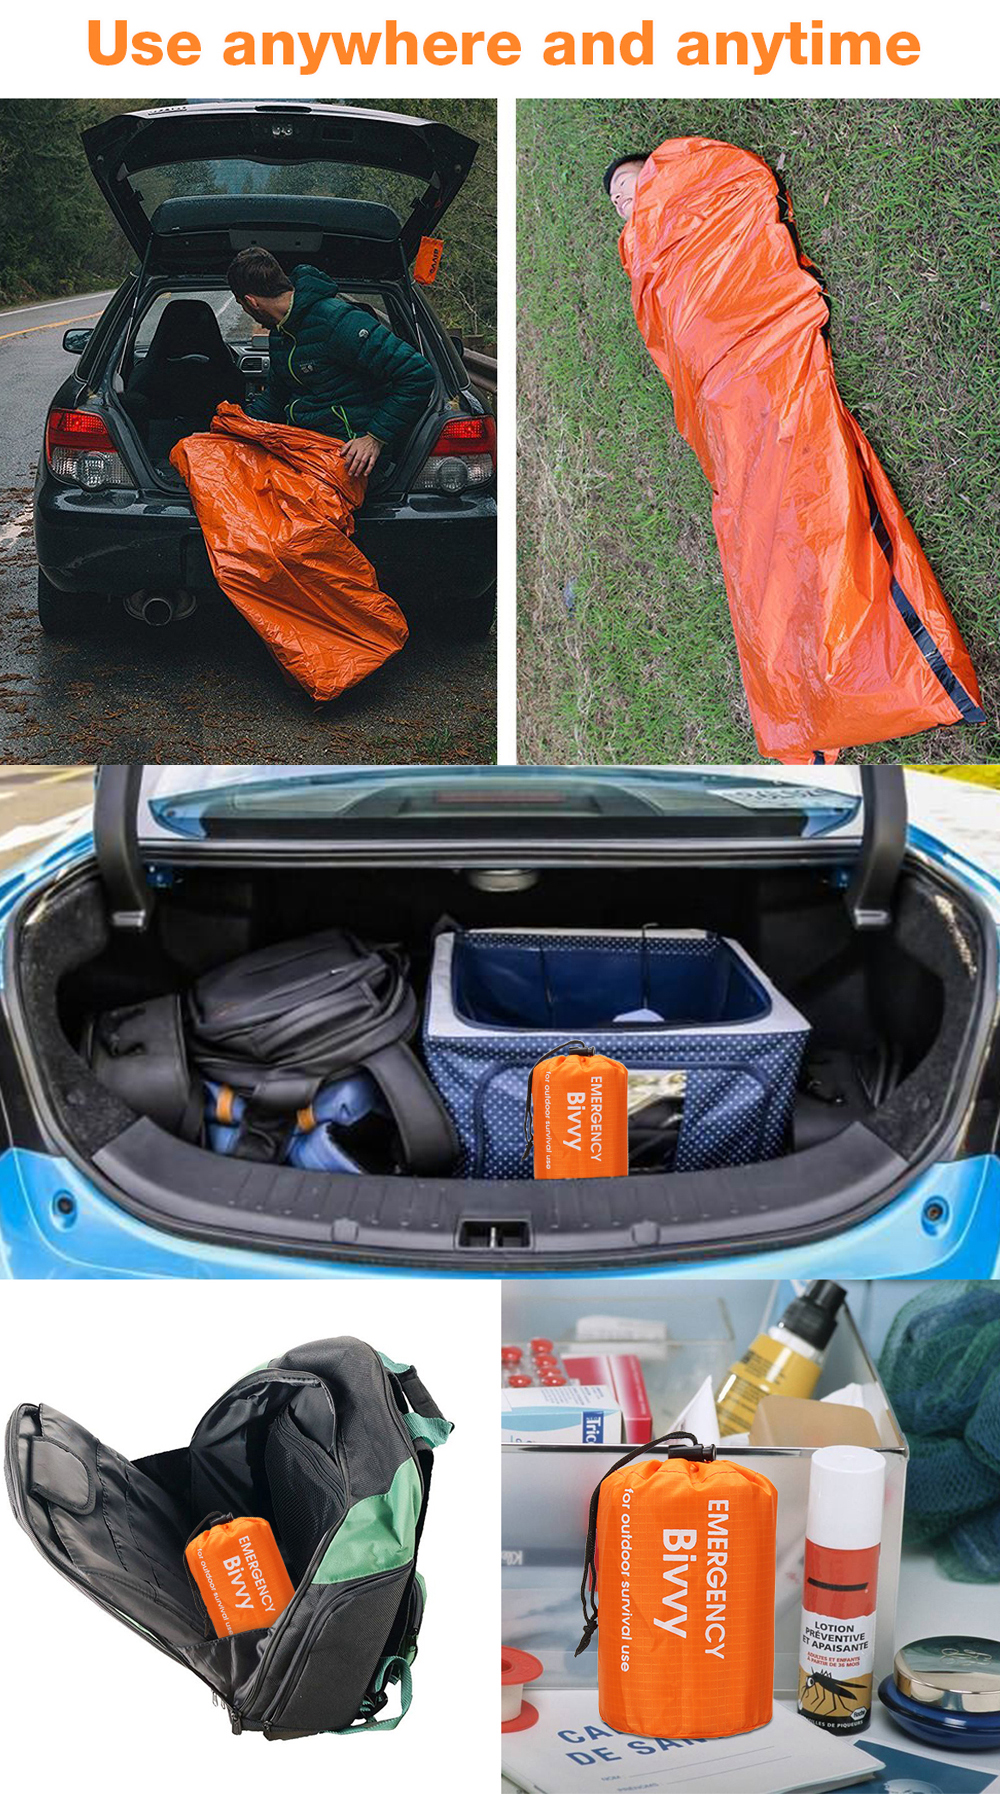 PE-Aluminum-Film-Sleeping-Bag-1-People-Outdoor-Camping-Waterproof-Sleeping-Pad-Portable-Folding-Slee-1406960